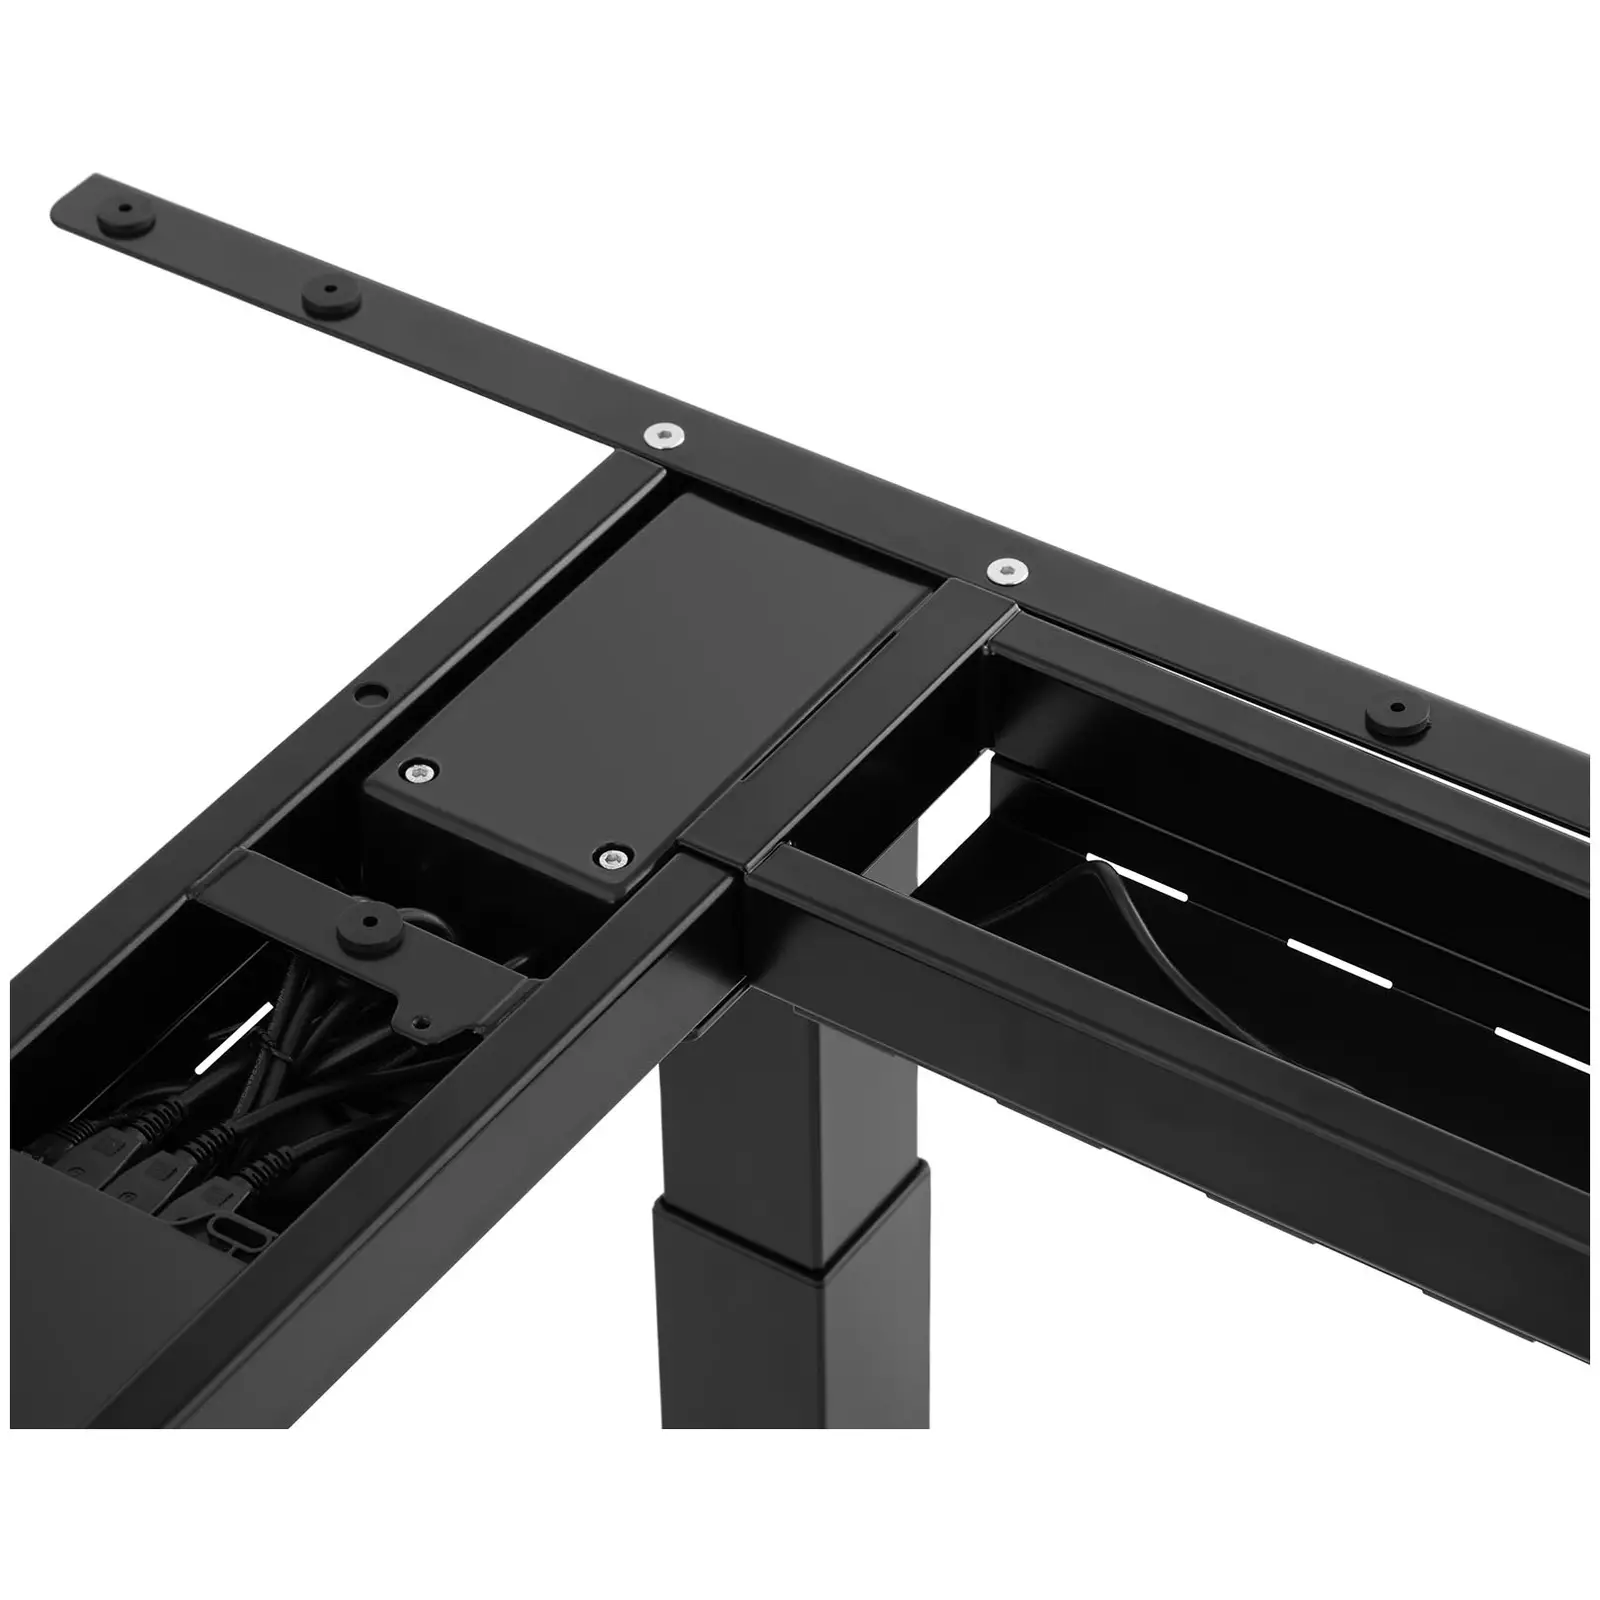 Bastidor para mesa de esquina con ajuste de altura - altura: 69-118 cm - ancho: 90-150 cm (izquierda) / 110-190 cm (derecha) - ángulo 90° - 150 kg